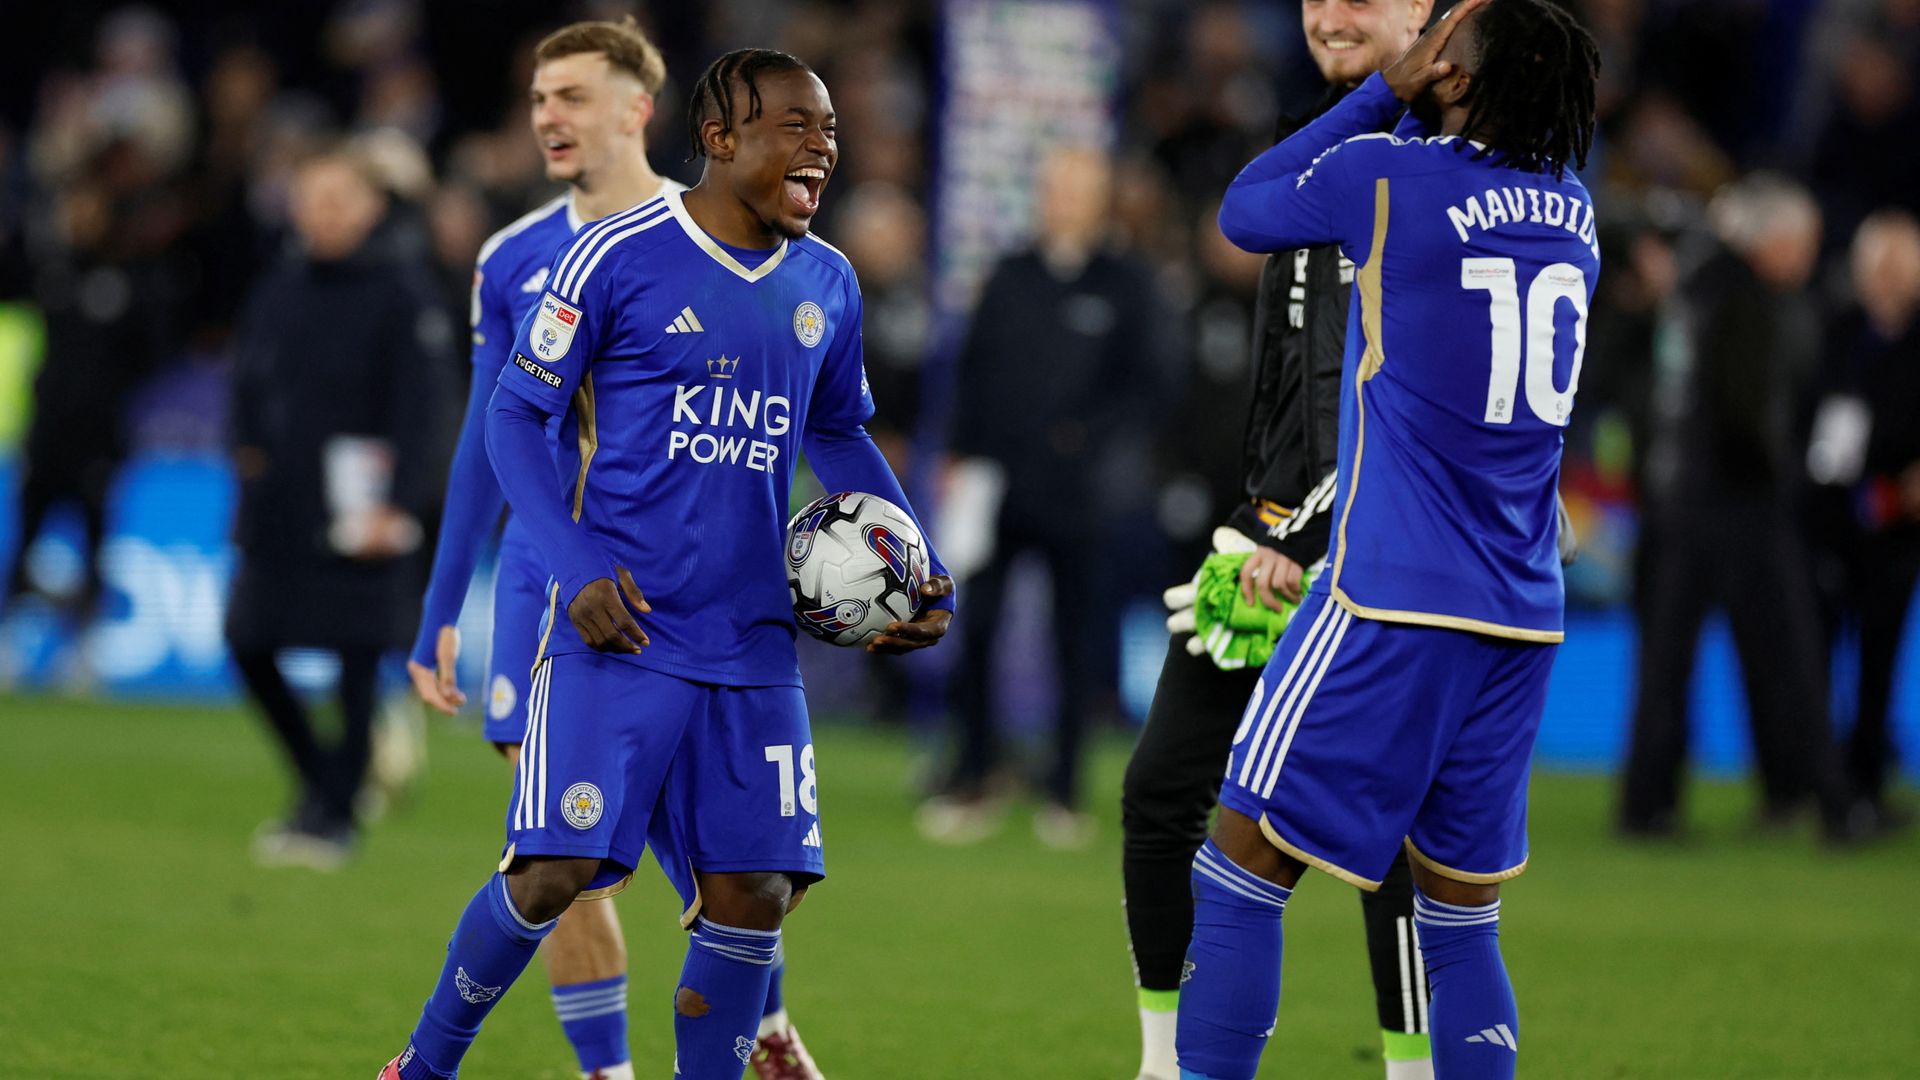 Leicester secure promotion back into Premier League